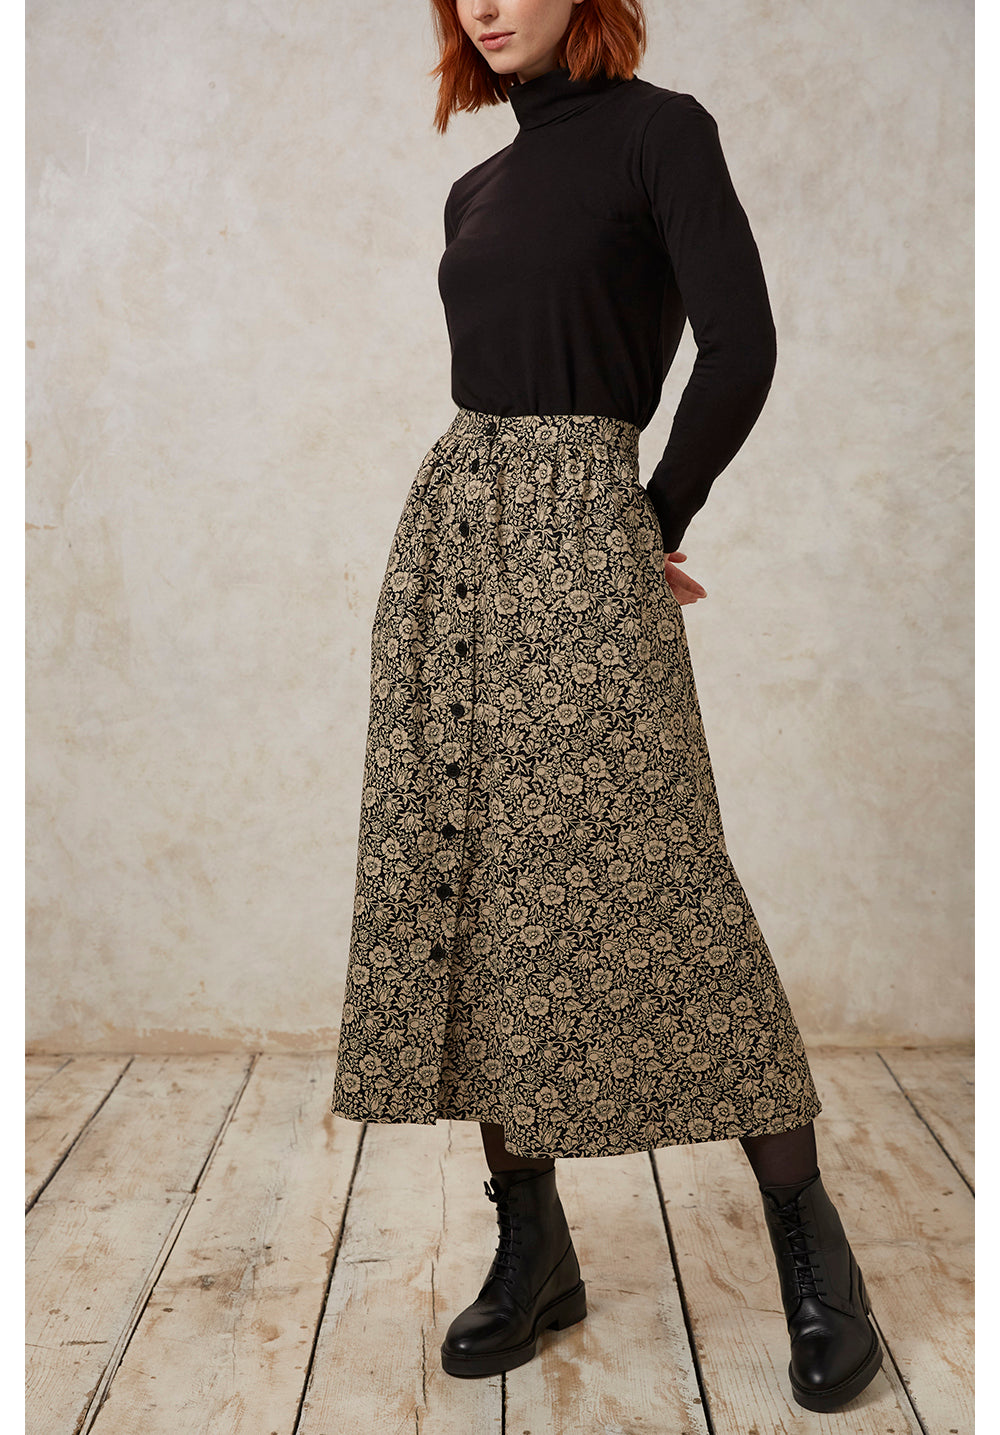 Mallow Skirt